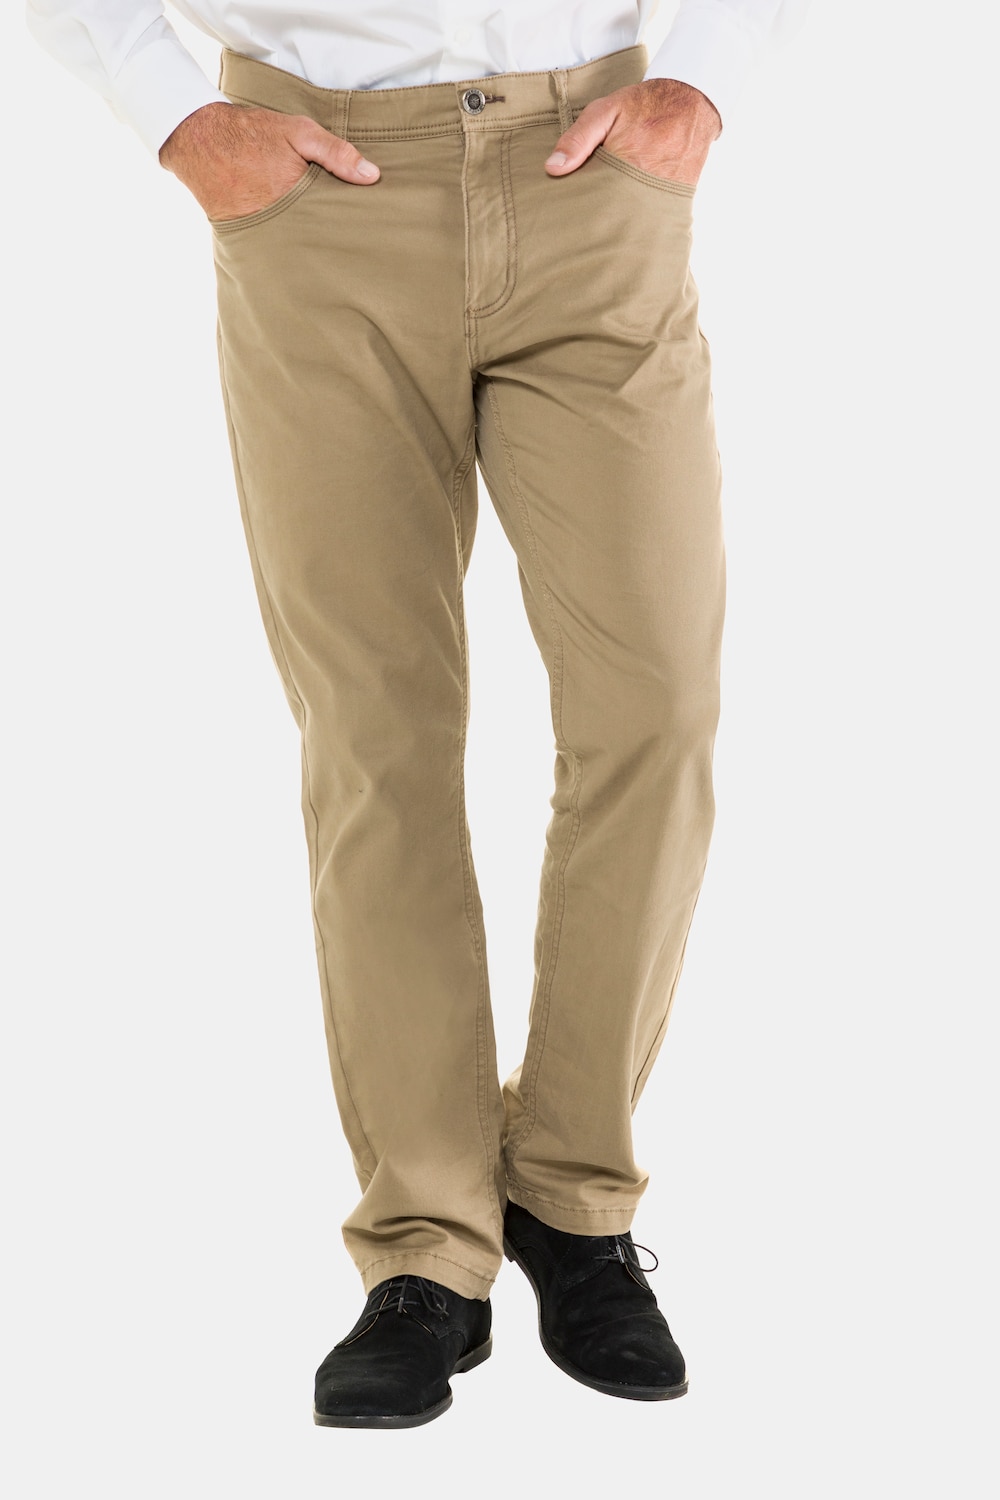 Große Größen 5-Pocket Hose, Herren, braun, Größe: 27, Baumwolle, JP1880